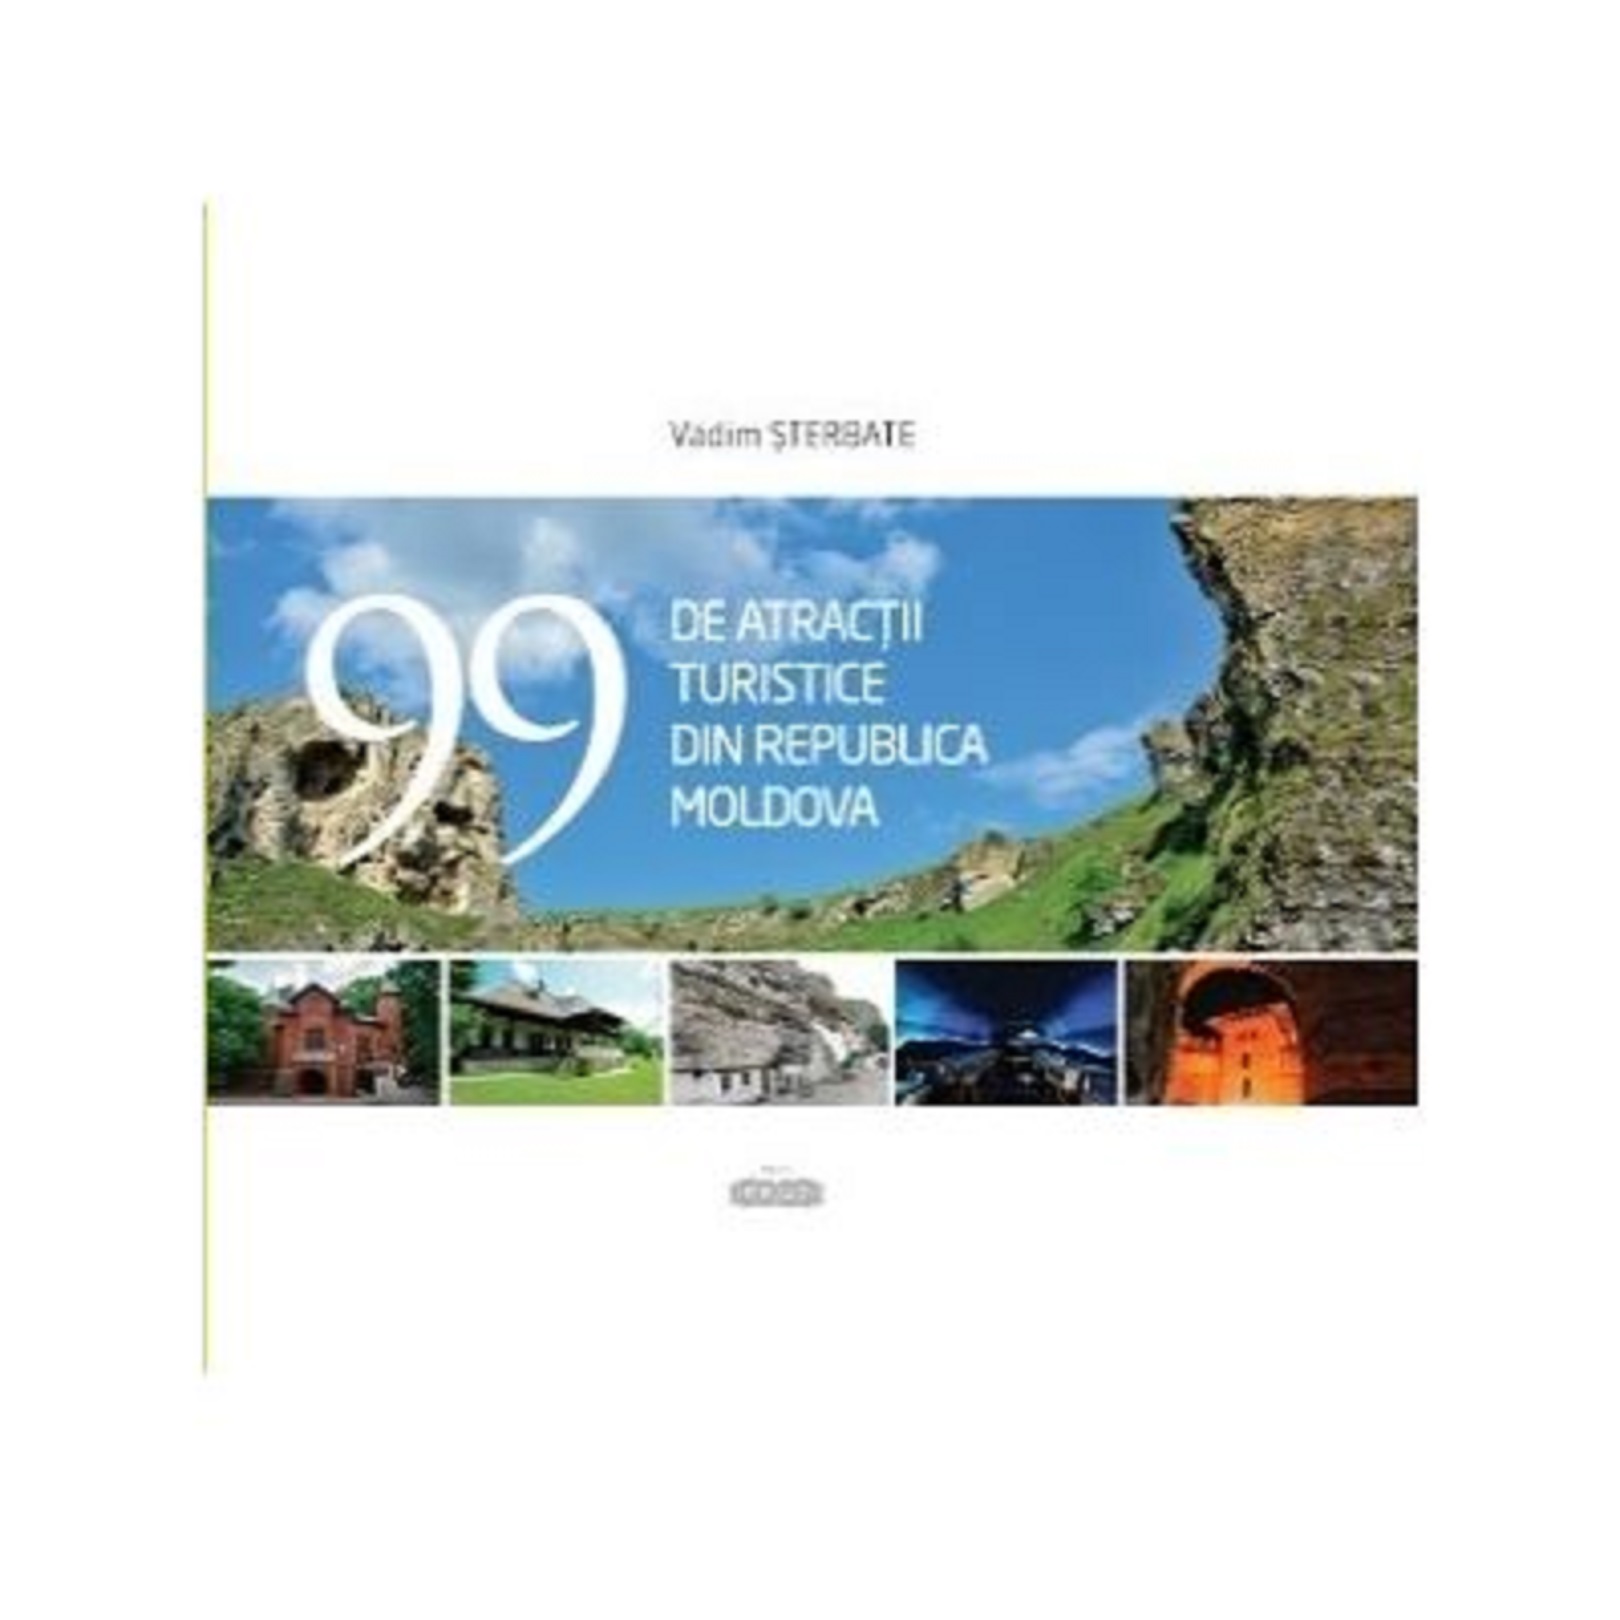 99 de atractii turistice din Republica Moldova | Vadim Sterbate atlase